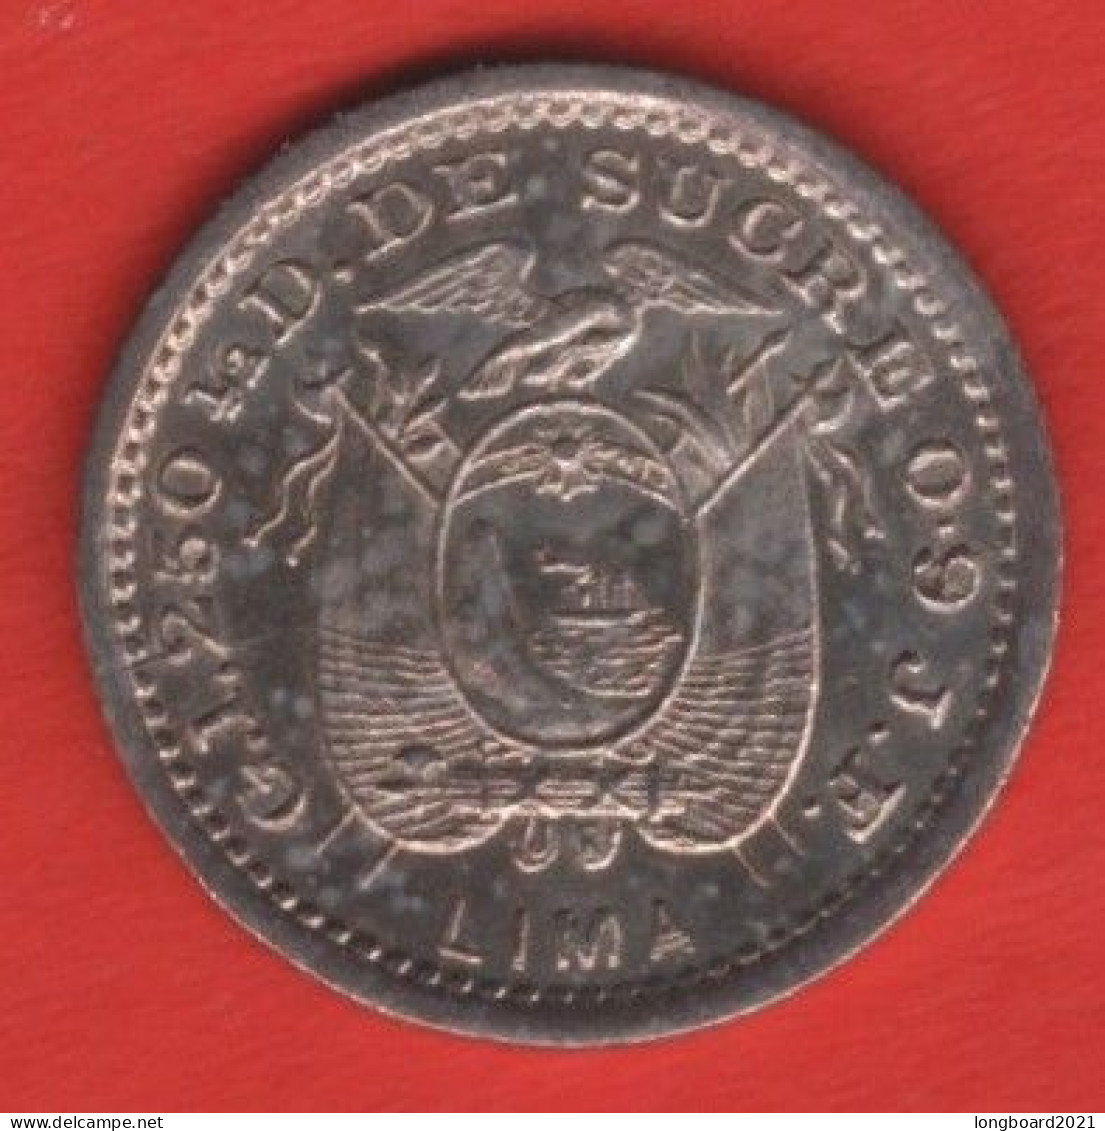 ECUADOR - 1/2 DECIMO 1897 -SILVER- - Equateur